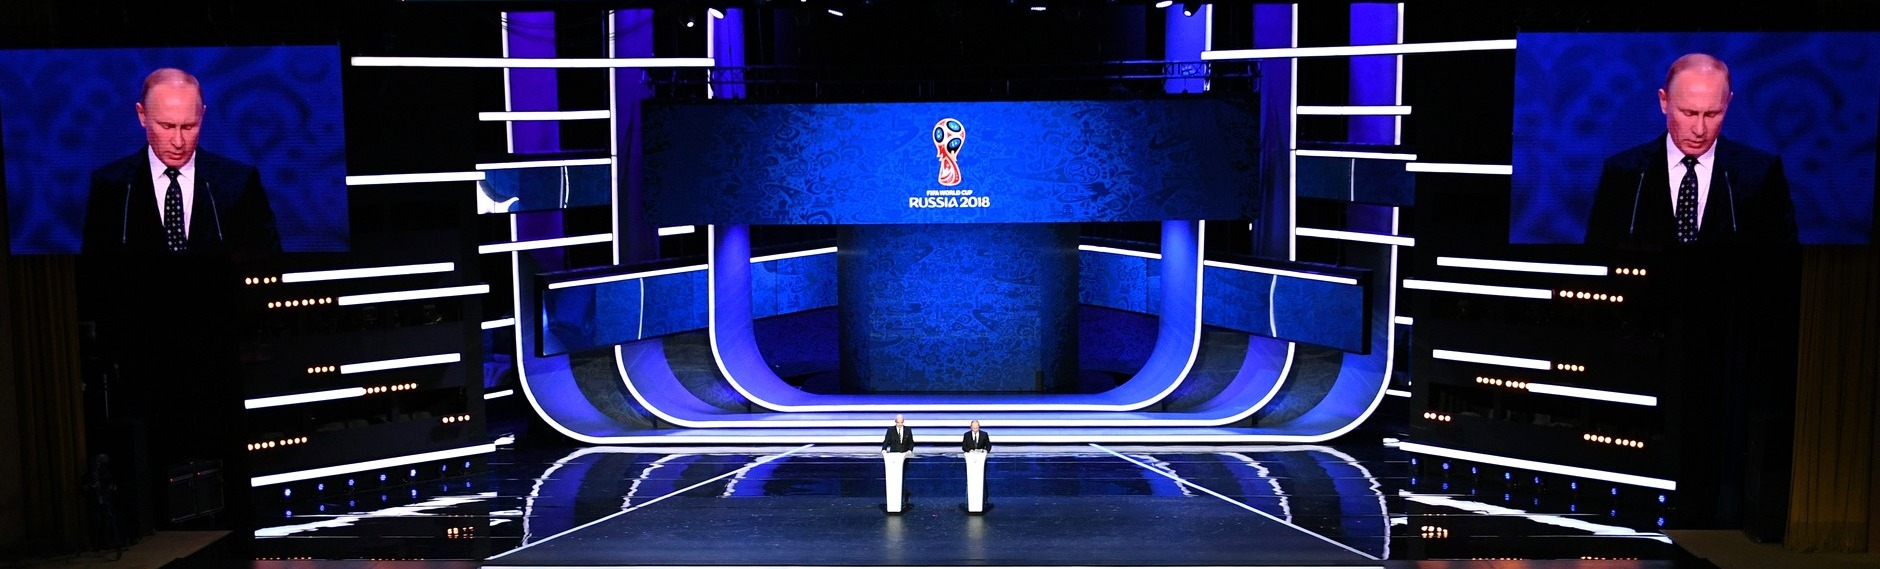 Стадион в Лужниках начали готовить к чемпионату мира по футболу 2018 года